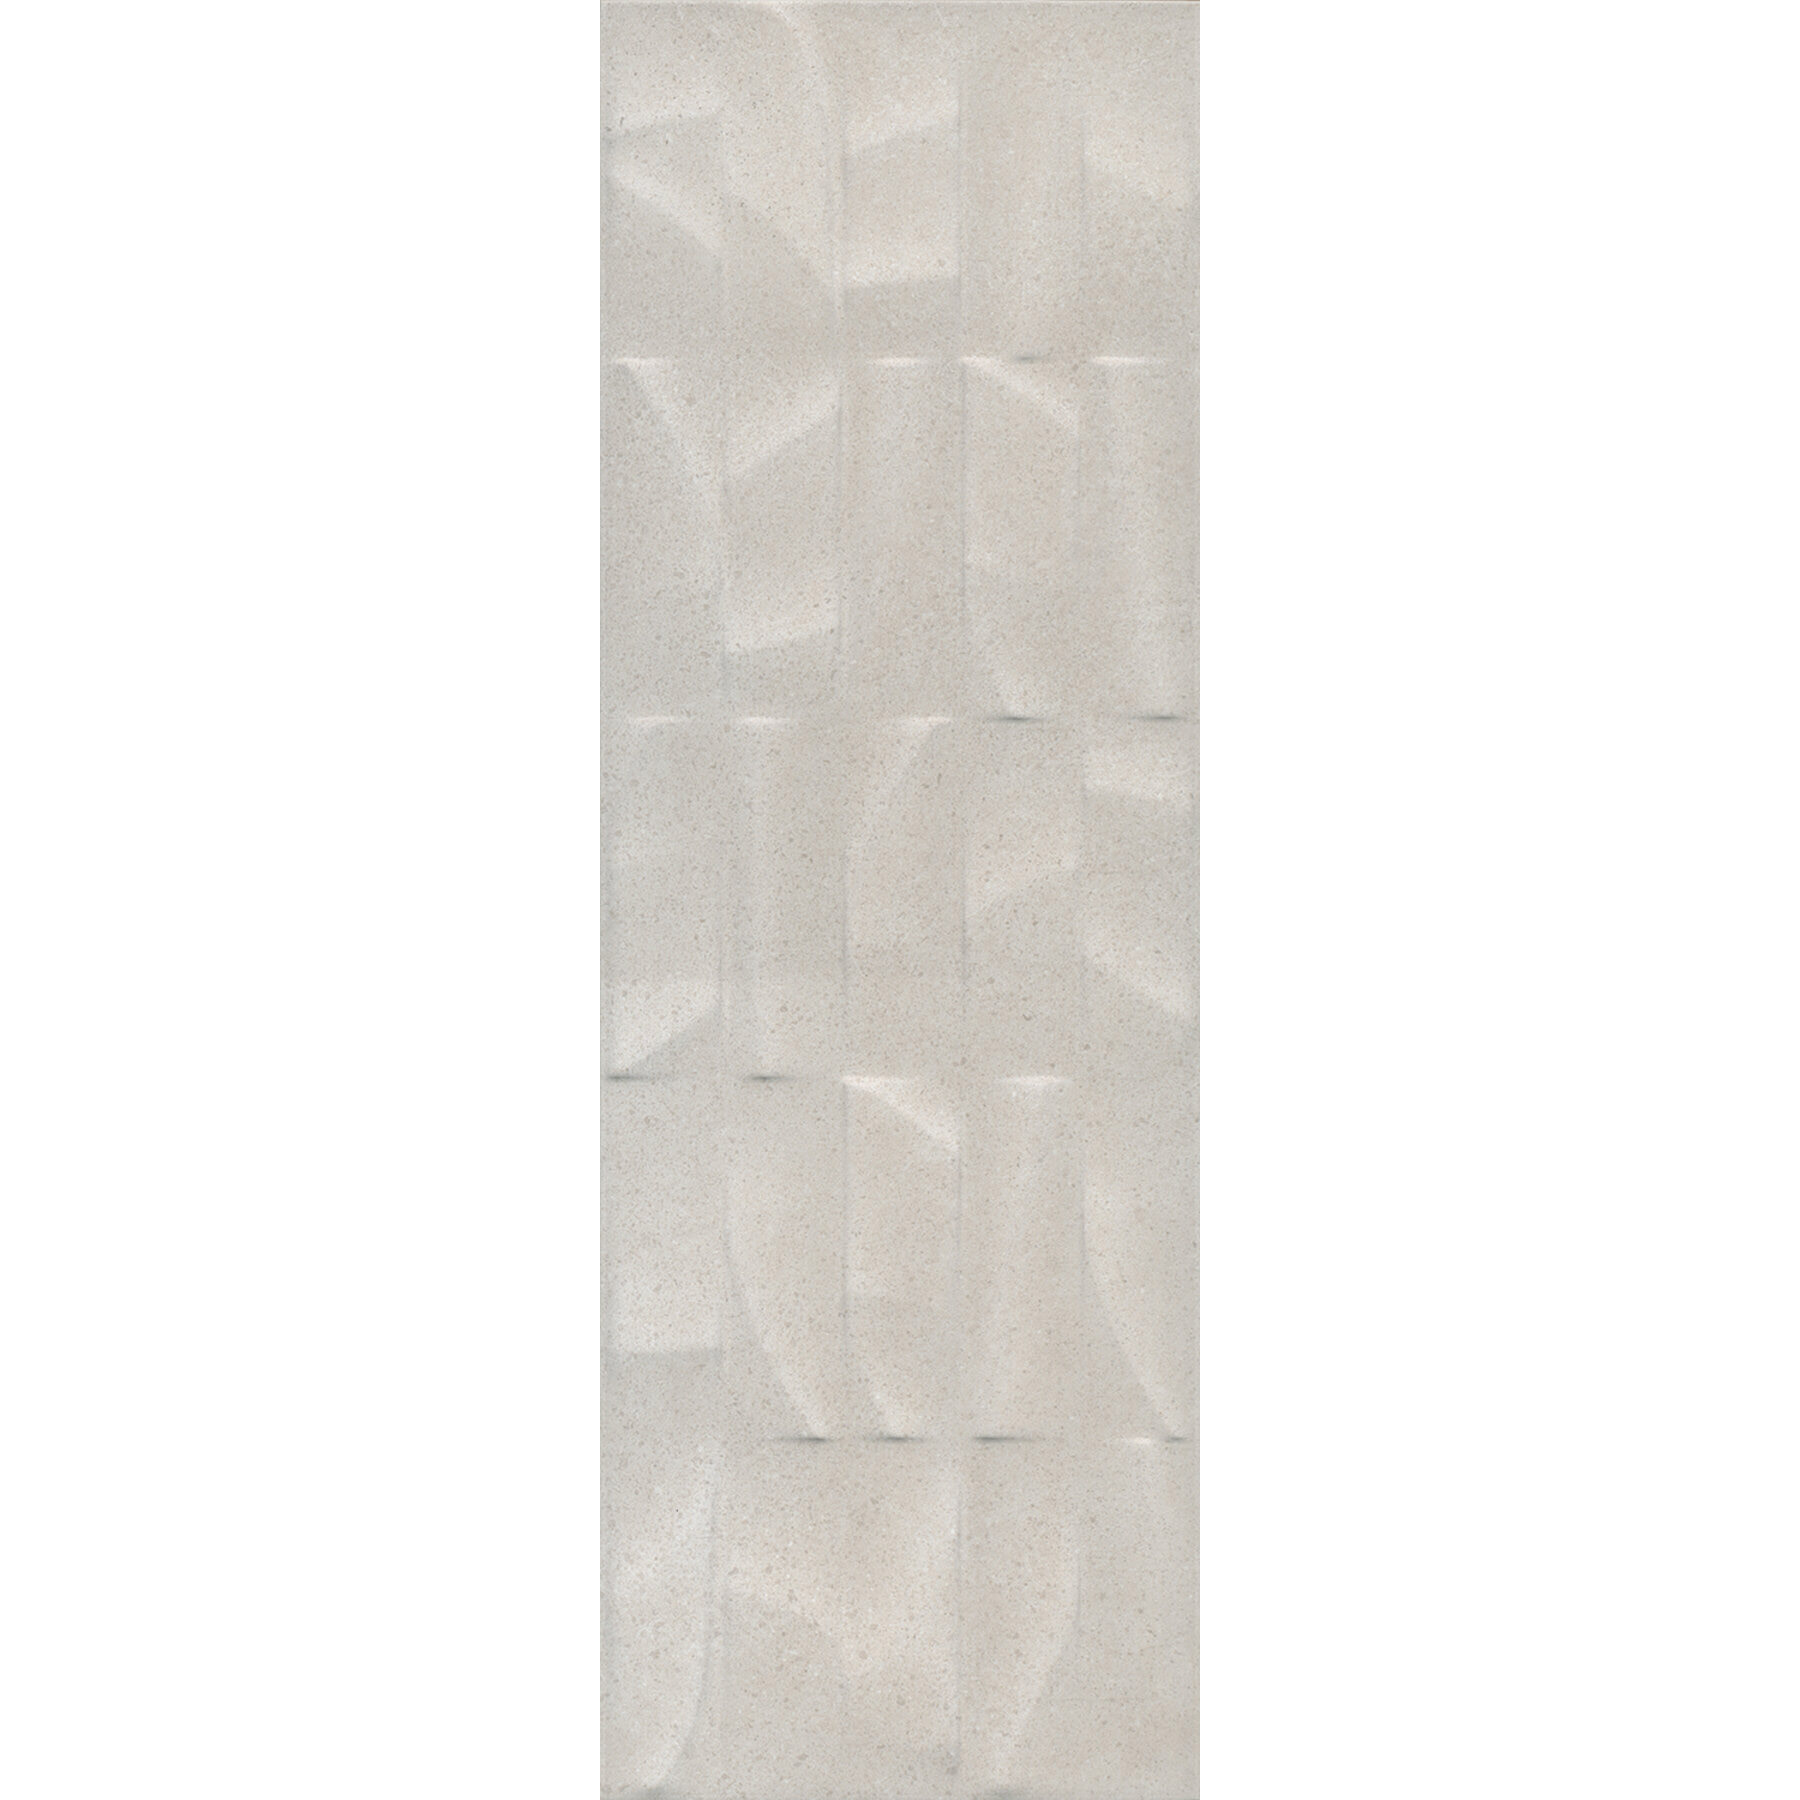 Плитка Kerama Marazzi Безана серый светлый структура обрезной 12151R 25x75 см плитка облицовочная нефрит террацио белая с крошкой 600x200x9 мм 10 шт 1 2 кв м